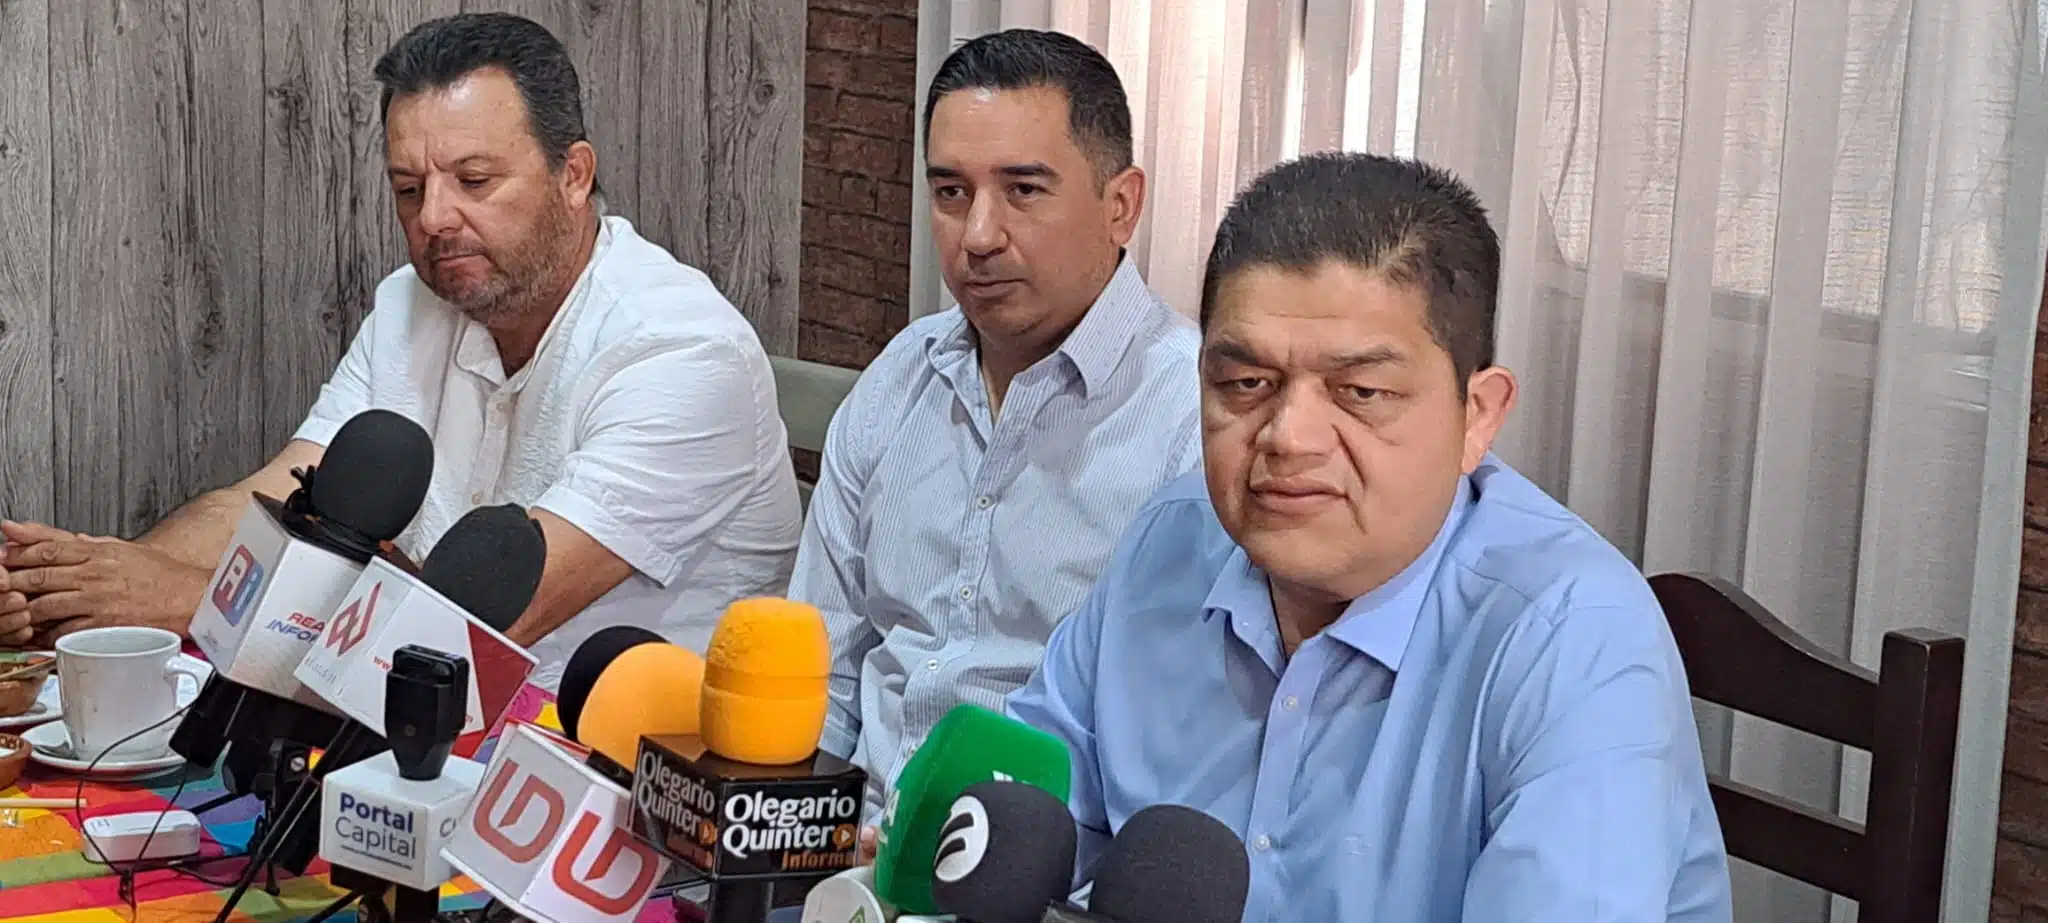 Fiscalía General de la República citó a campesinos que causaron daños económicos en casetas en Sinaloa